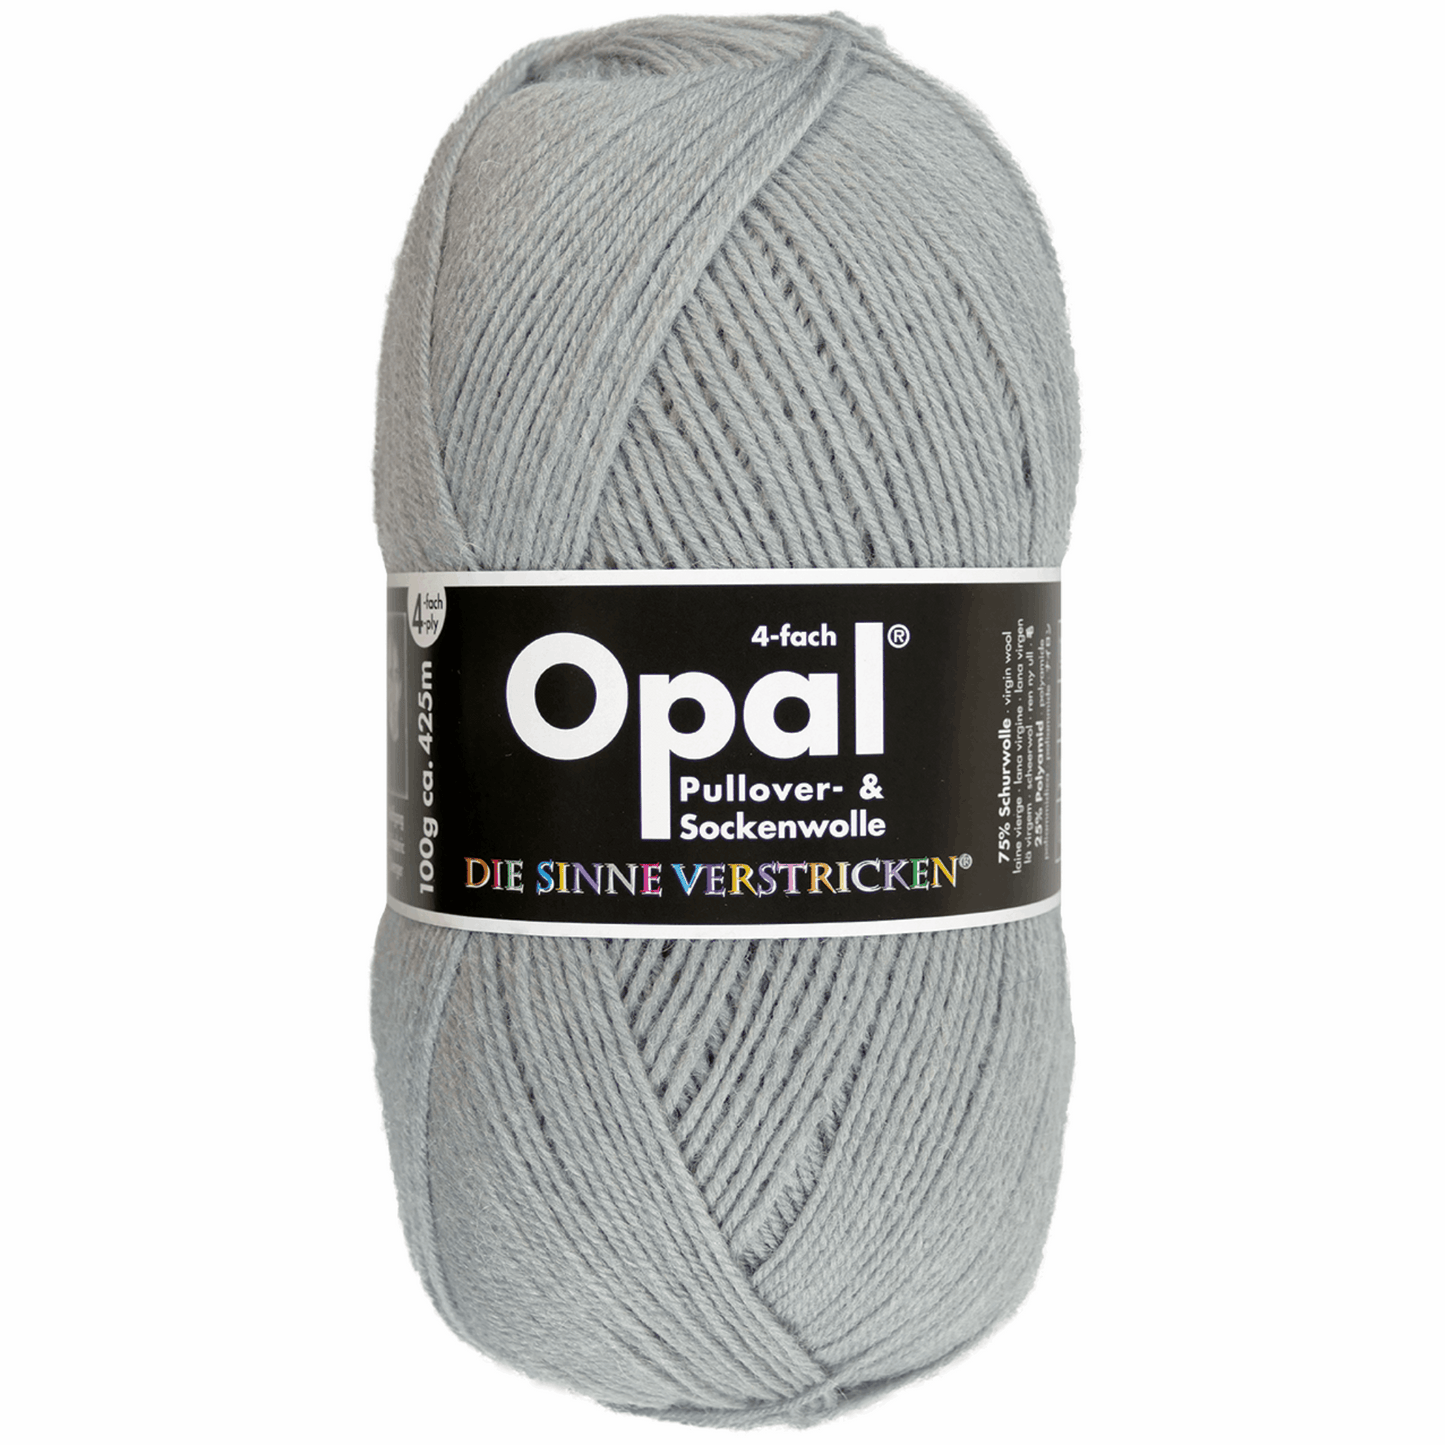 Opal plain 4 threads. 100g 2011/12, 97760, color medium gray 5193